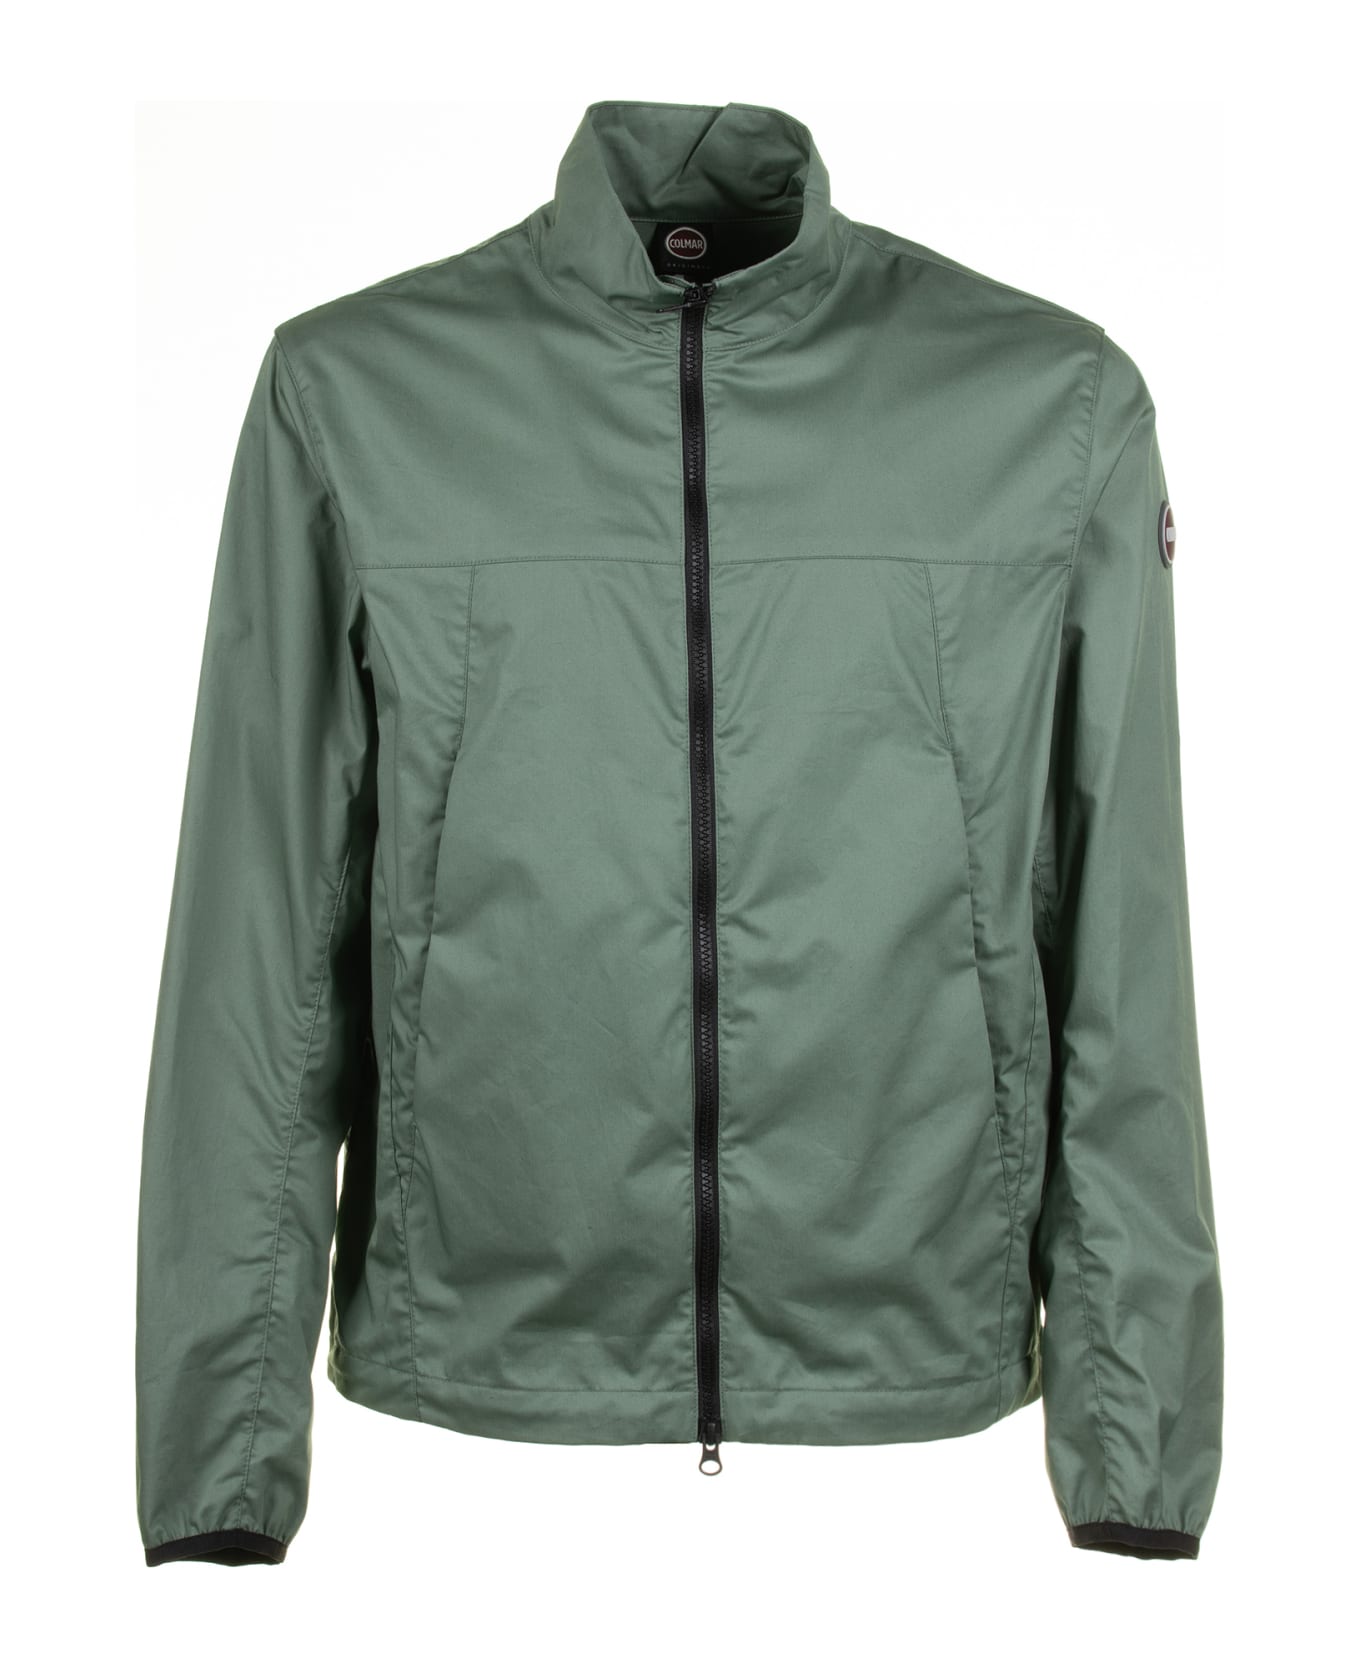 Colmar Green Cotton Twill Jacket - VERDE